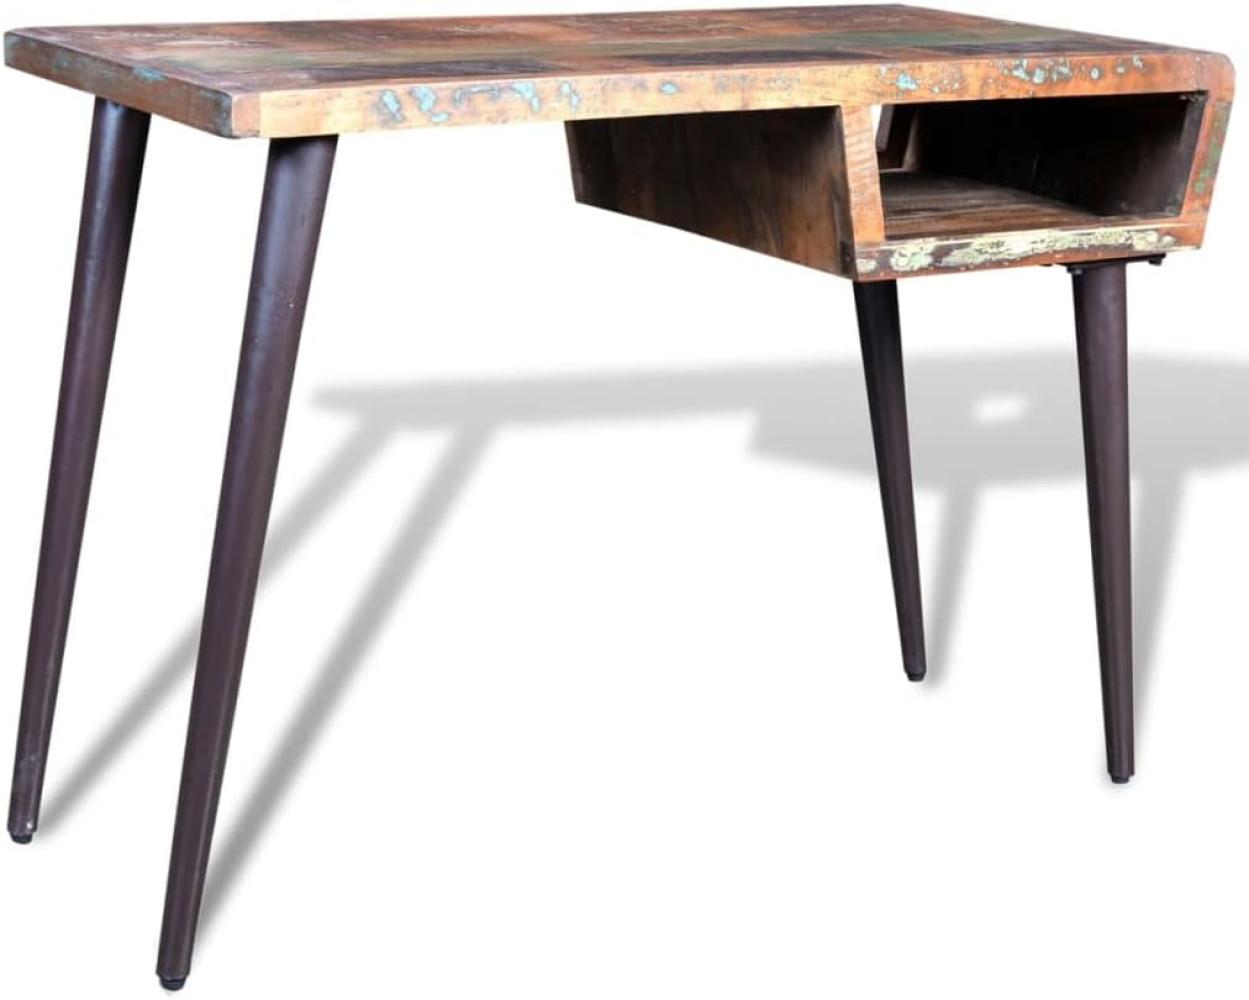 Tisch mit Eisenbeinen, Altholz, 80 x 50 x 110 cm Bild 1